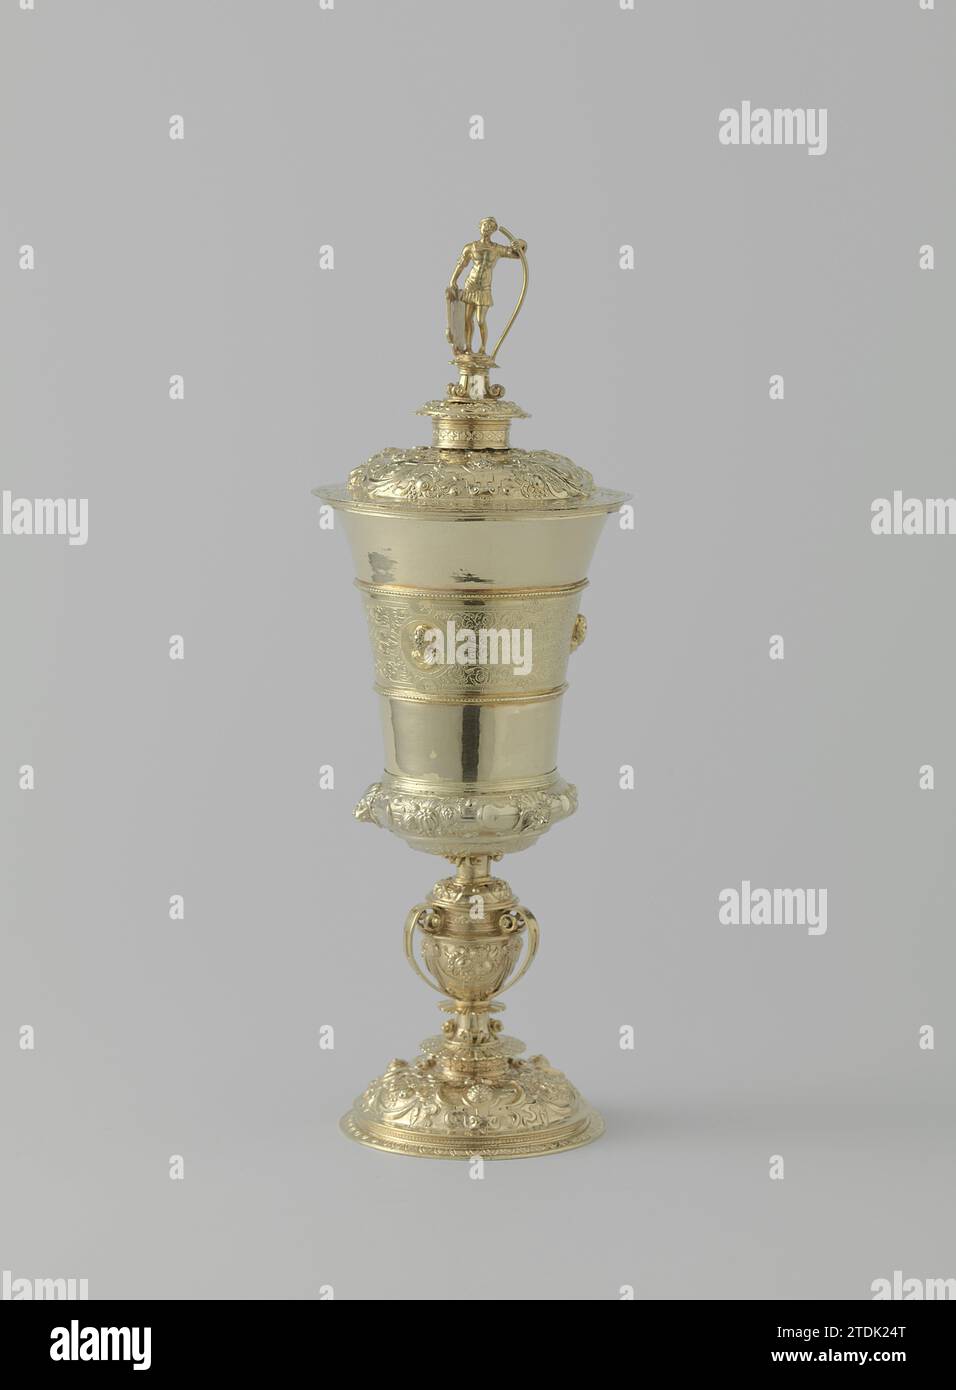 Calice con coperchio, Adriaen de Groet, 1561 - 1562 tazza con coperchio in argento dorato. Cartigli guidati e limiti di frutta sul piede sagomato e curvo, sul fondo allargato e sul coperchio a volta; su quest'ultimo anche i mascaron. Il nodus a forma di vaso, decorato, è contenuto in quattro morsetti forati a forma di nastro. Il calice dilatante è diviso in tre strisce orizzontali da due profili; solo quello centrale è decorato: Tre teste rialzate (gioventù, età adulta e vecchiaia) su uno sfondo di raffinato lavoro di banda e Maurkenken. Il coperchio è coronato da un guerriero schermato su un pied-de-stable doppio. t Foto Stock